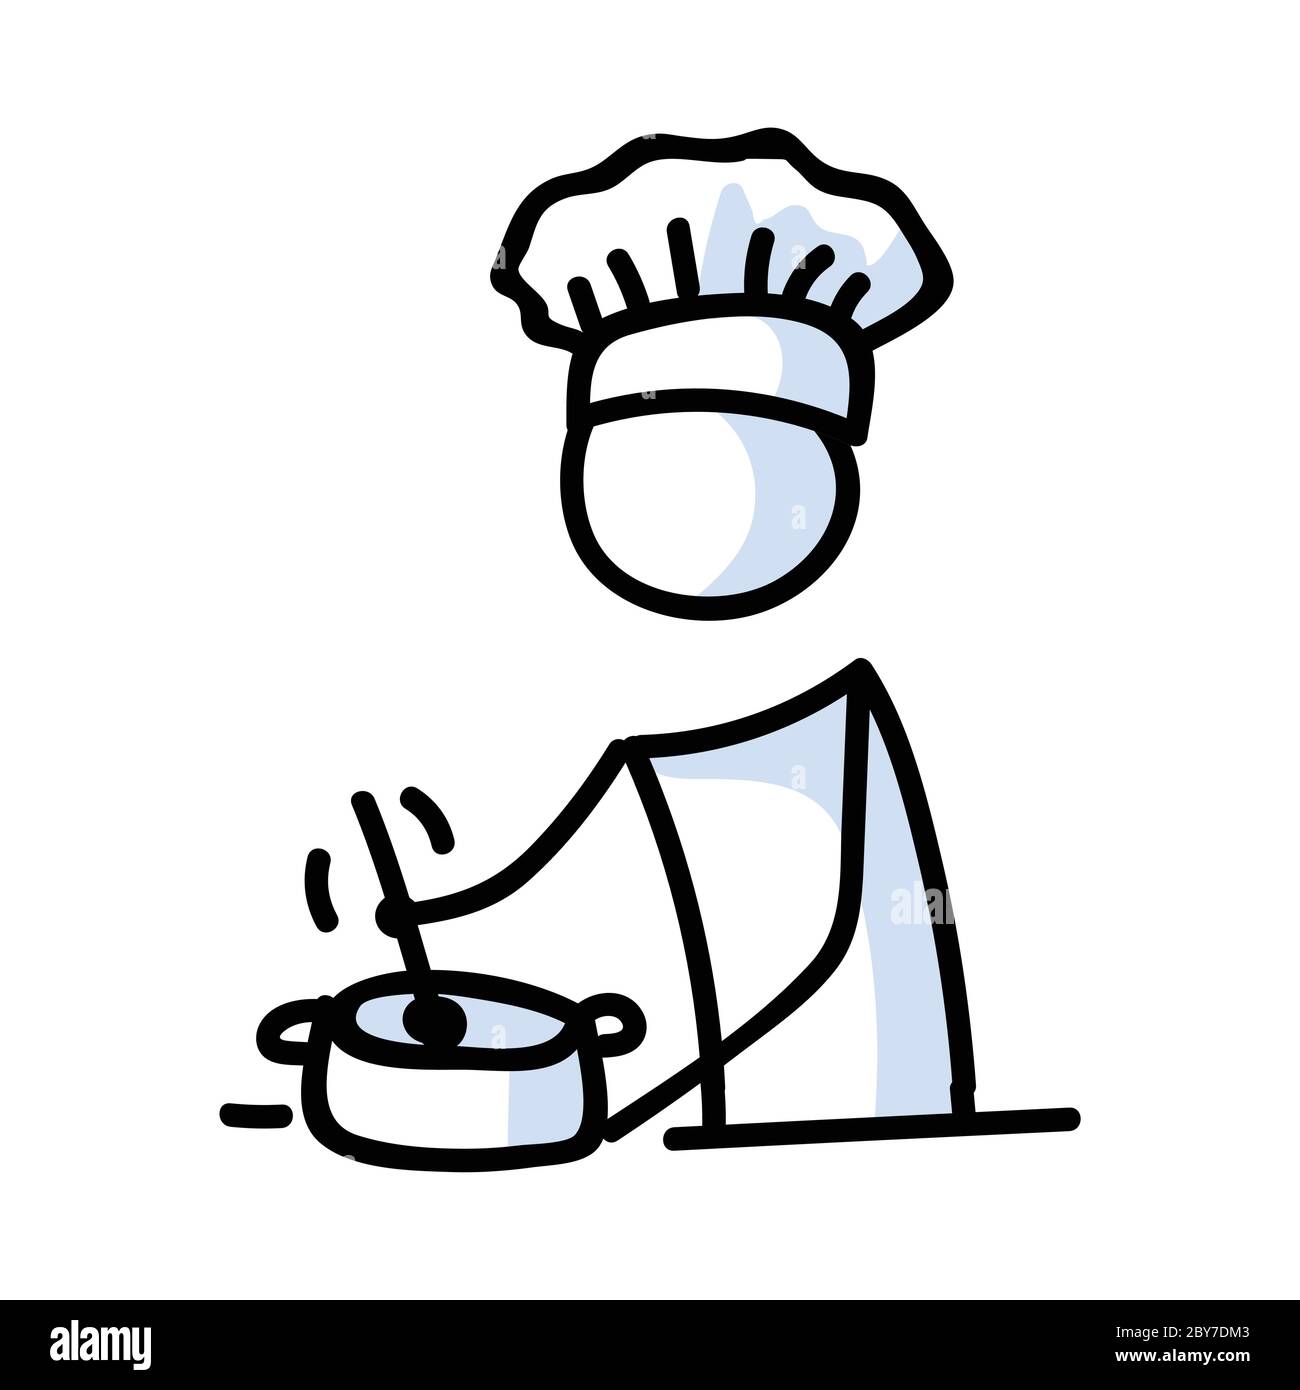 Niedlichen Stick Figur Koch Kochen und Rühren Topf lineart Symbol.  Piktogramm zur Zubereitung des Abendessens. Kommunikation der Abbildung der  Restaurantmahlzeiten. Küche Stock-Vektorgrafik - Alamy